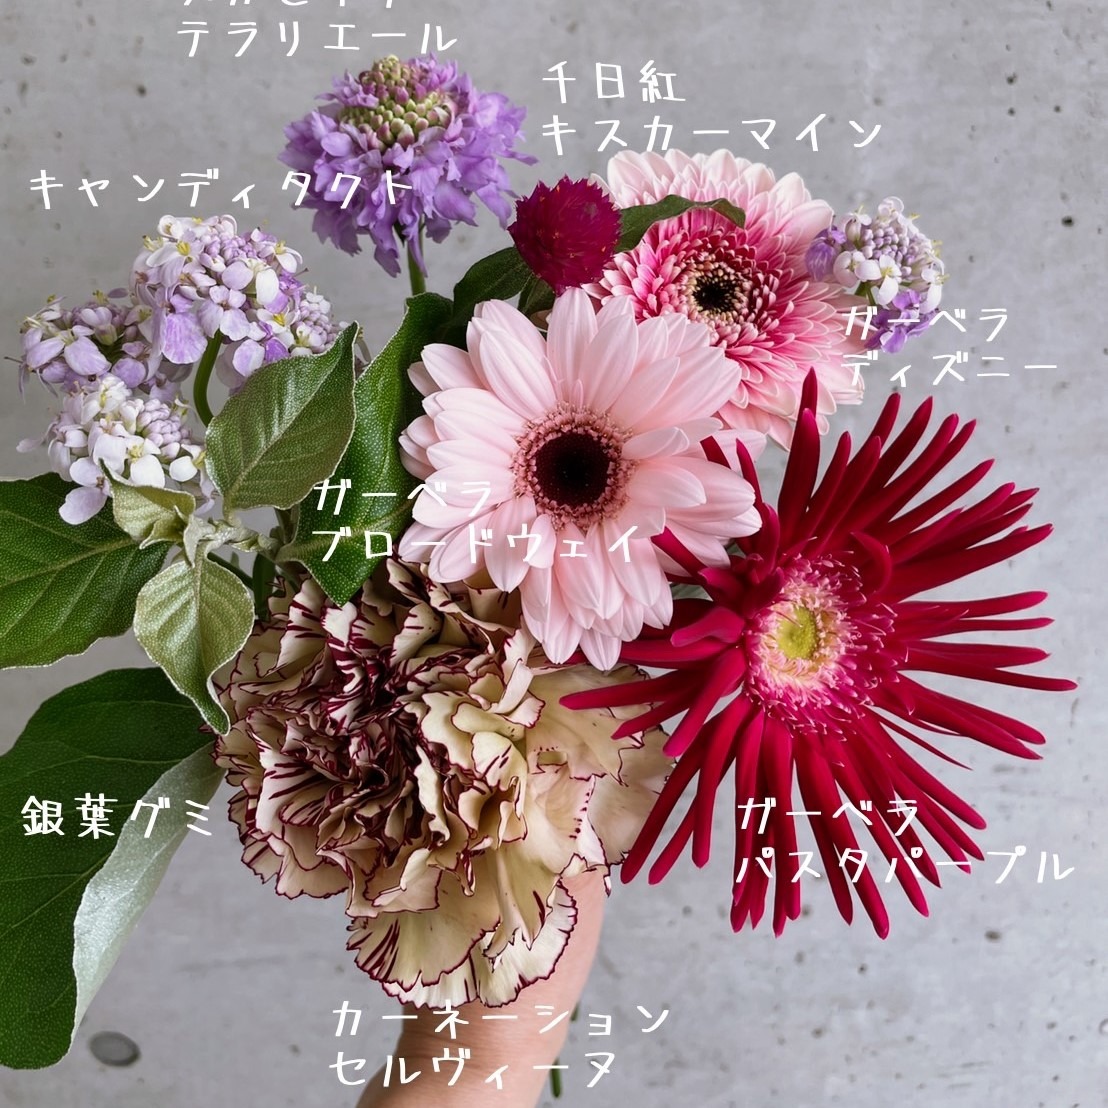 4月11日発送の定期便テーマ 4月18日はガーベラ記念日 よいはな Yoihana 最高品質のお花をお届けするネット通販